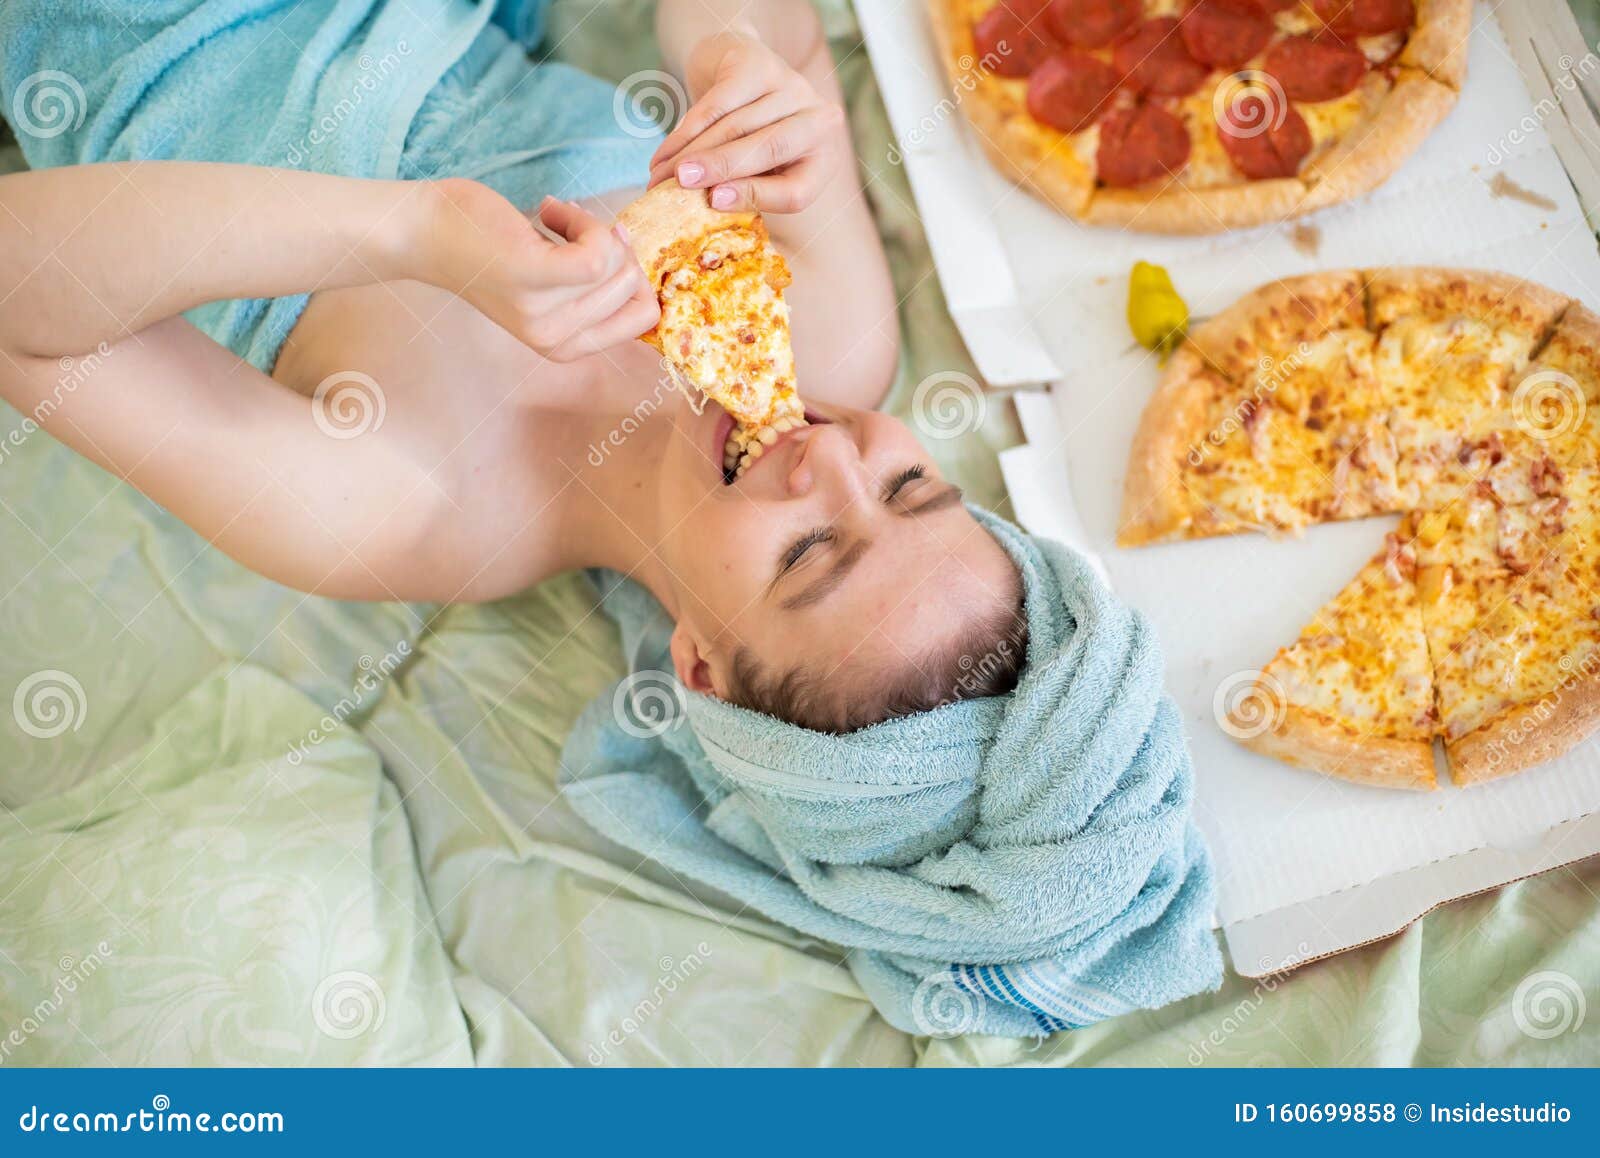 Cute Met Een Handdoek Op Haar Hoofd Eet Pizza in Bed Jonge Eet Pizza in Bed Het Leven is Een Plezier, Lichaamspositief Stock Foto - Image of binnen: